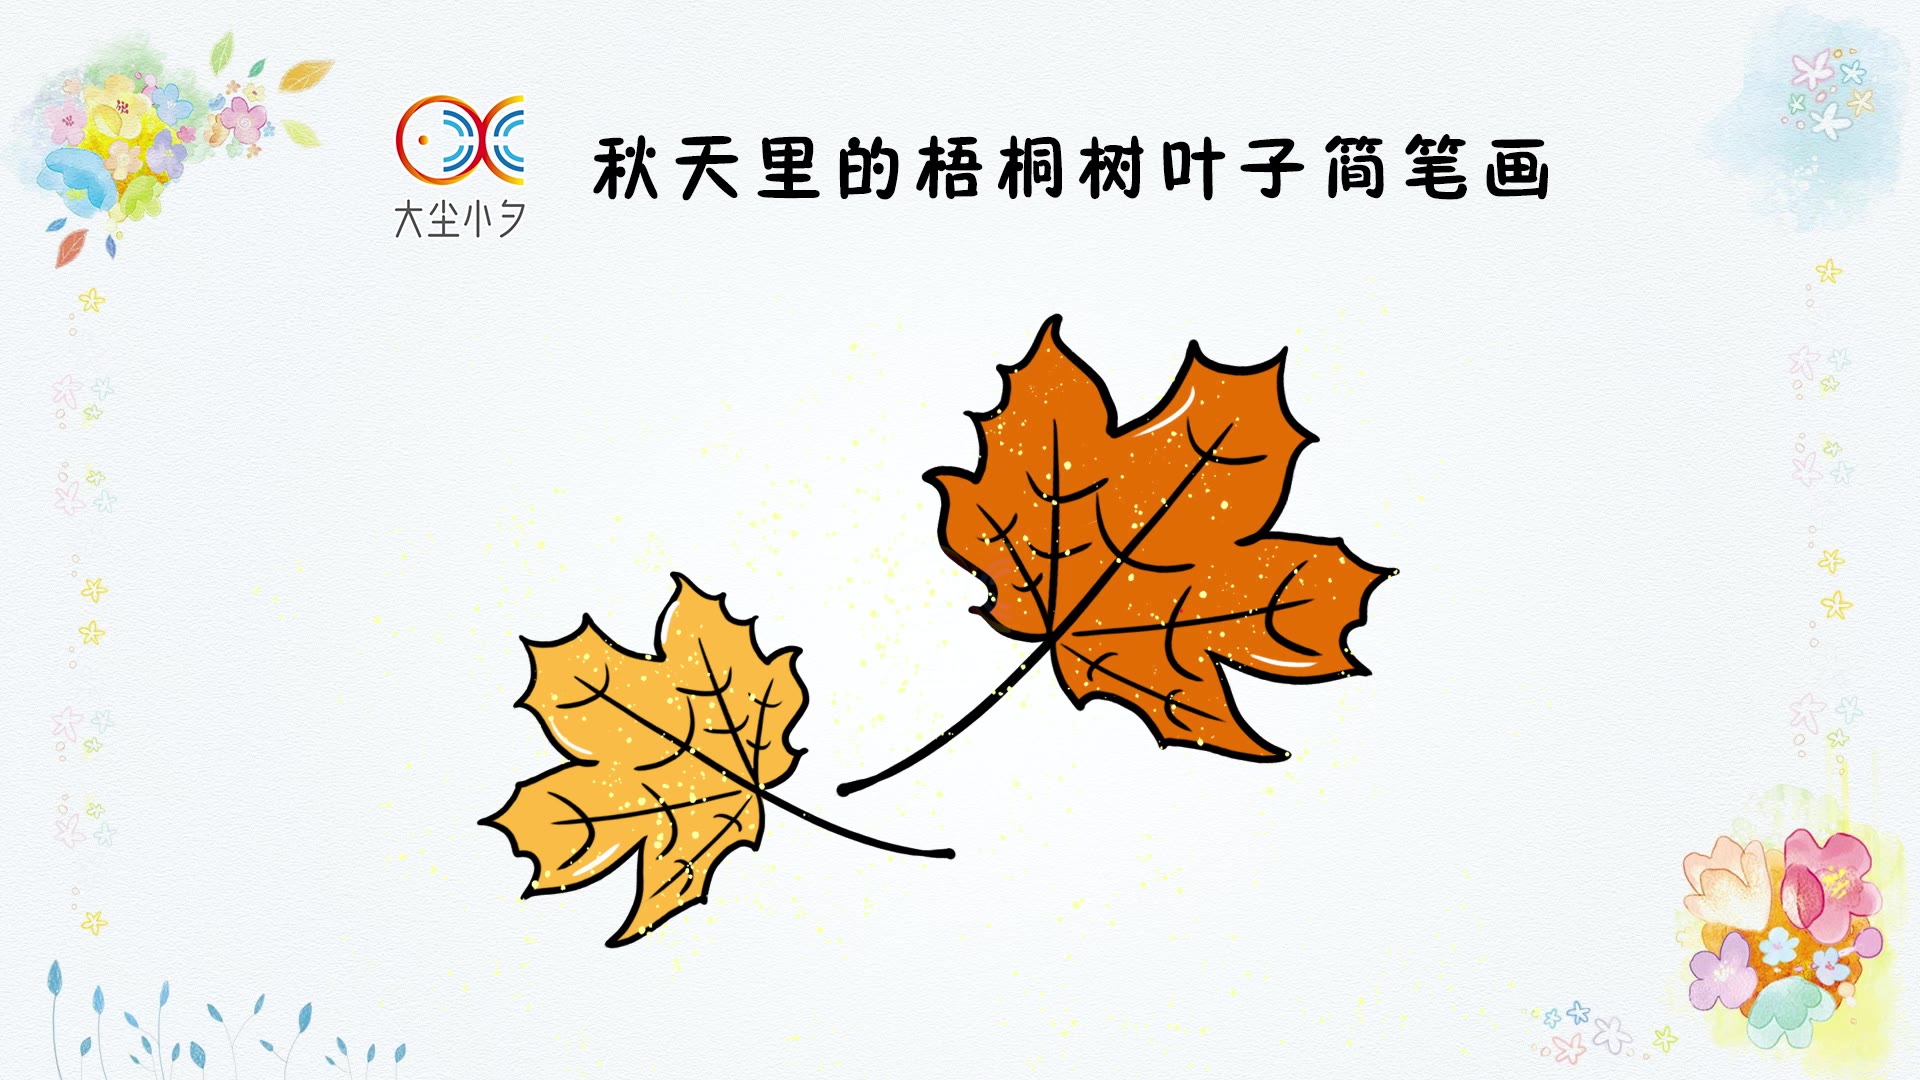 秋天里的梧桐树叶子简笔画,30秒看绘